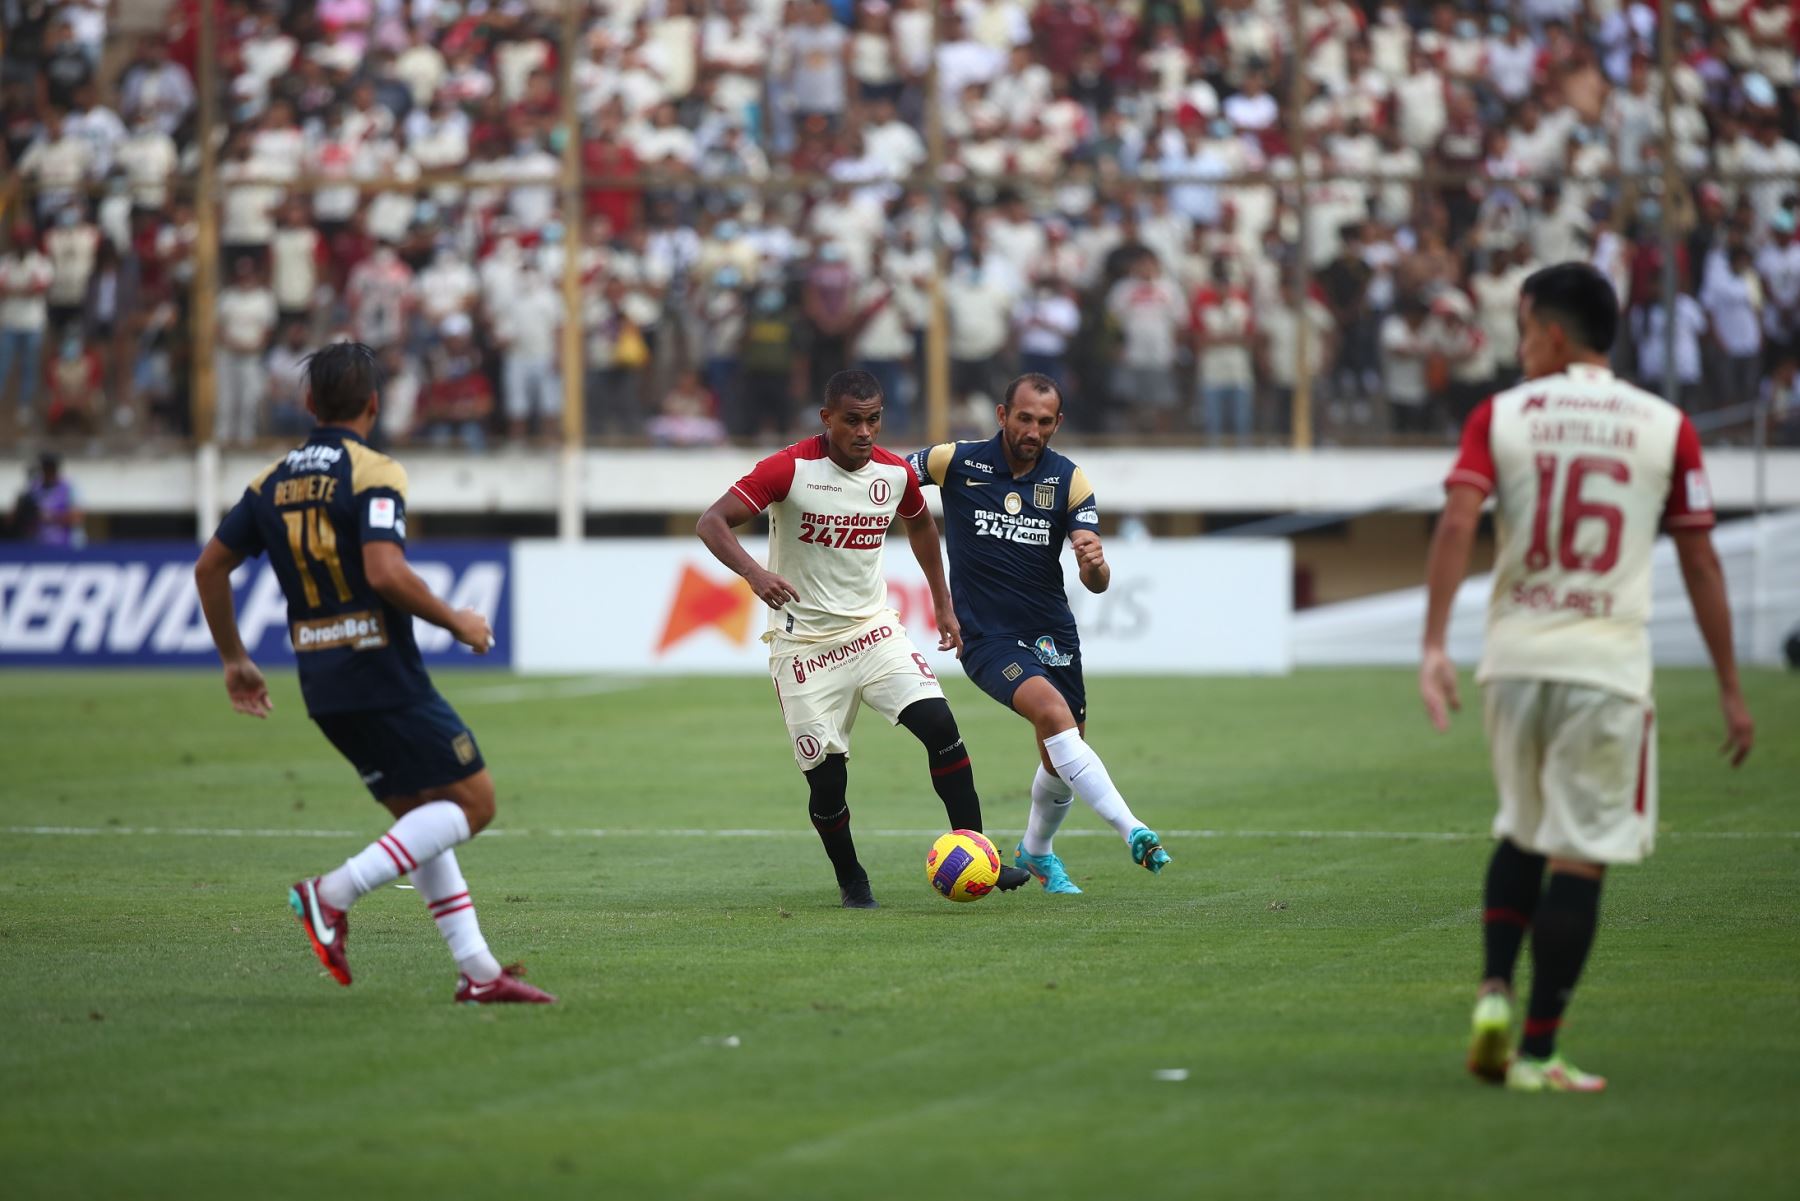 El partido entre Alianza Lima y Universitario genera mucha expectativa entre la afición peruana